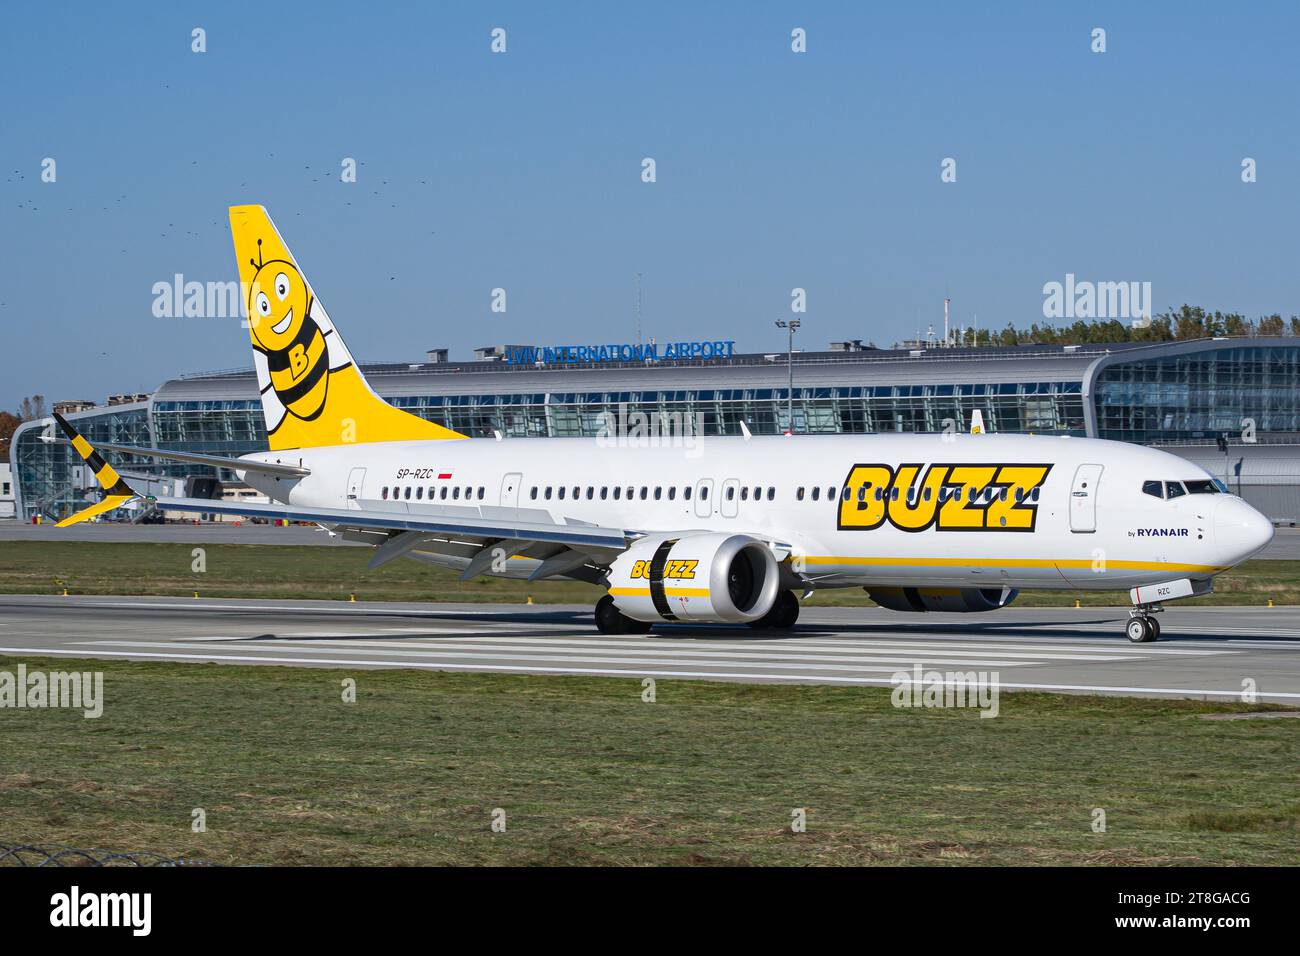 Buzz Airlines(exploité par Ryanair) Boeing 737 MAX 8-200 ralentissant sur piste après l'atterrissage à l'aéroport de Lviv. Photo de haute qualité Banque D'Images